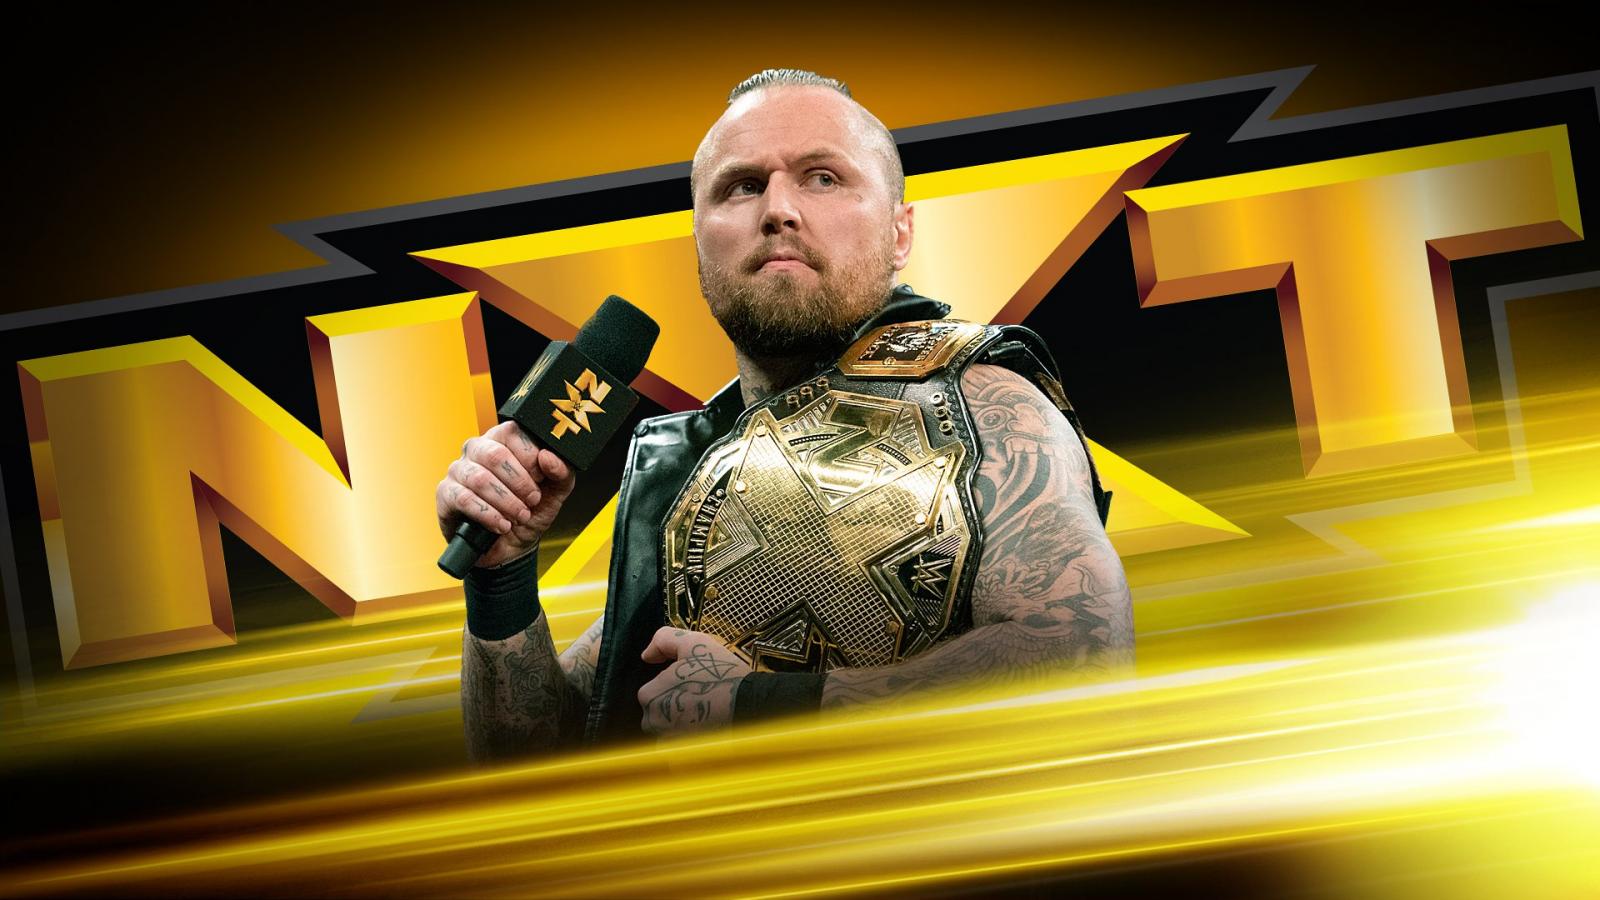 The NXT Champion will speak!